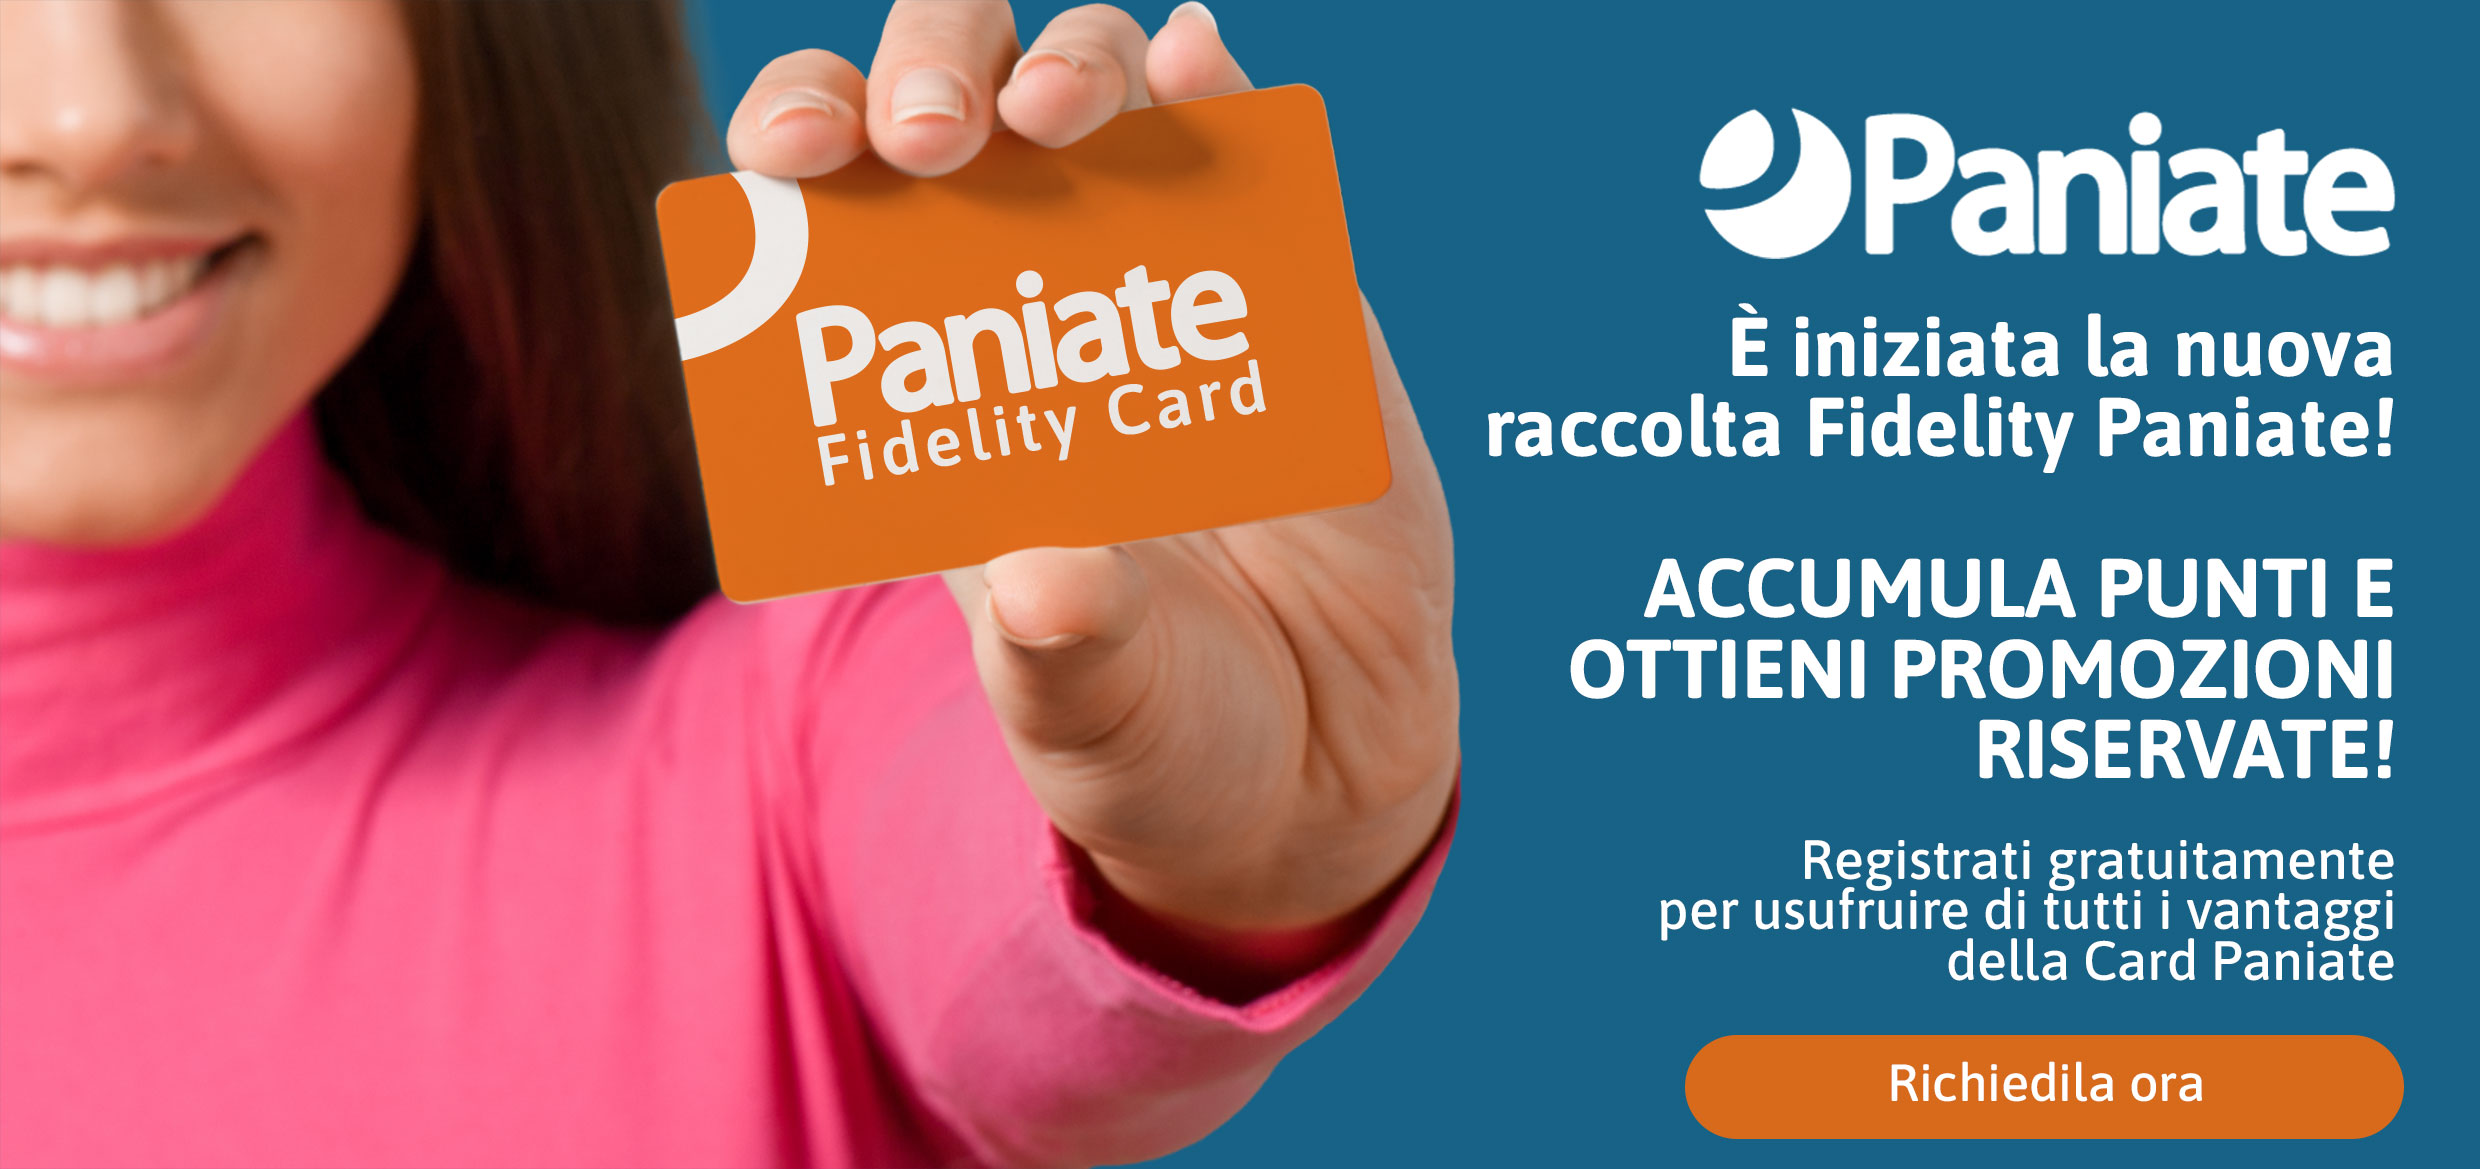 fidelity card paniate 2022